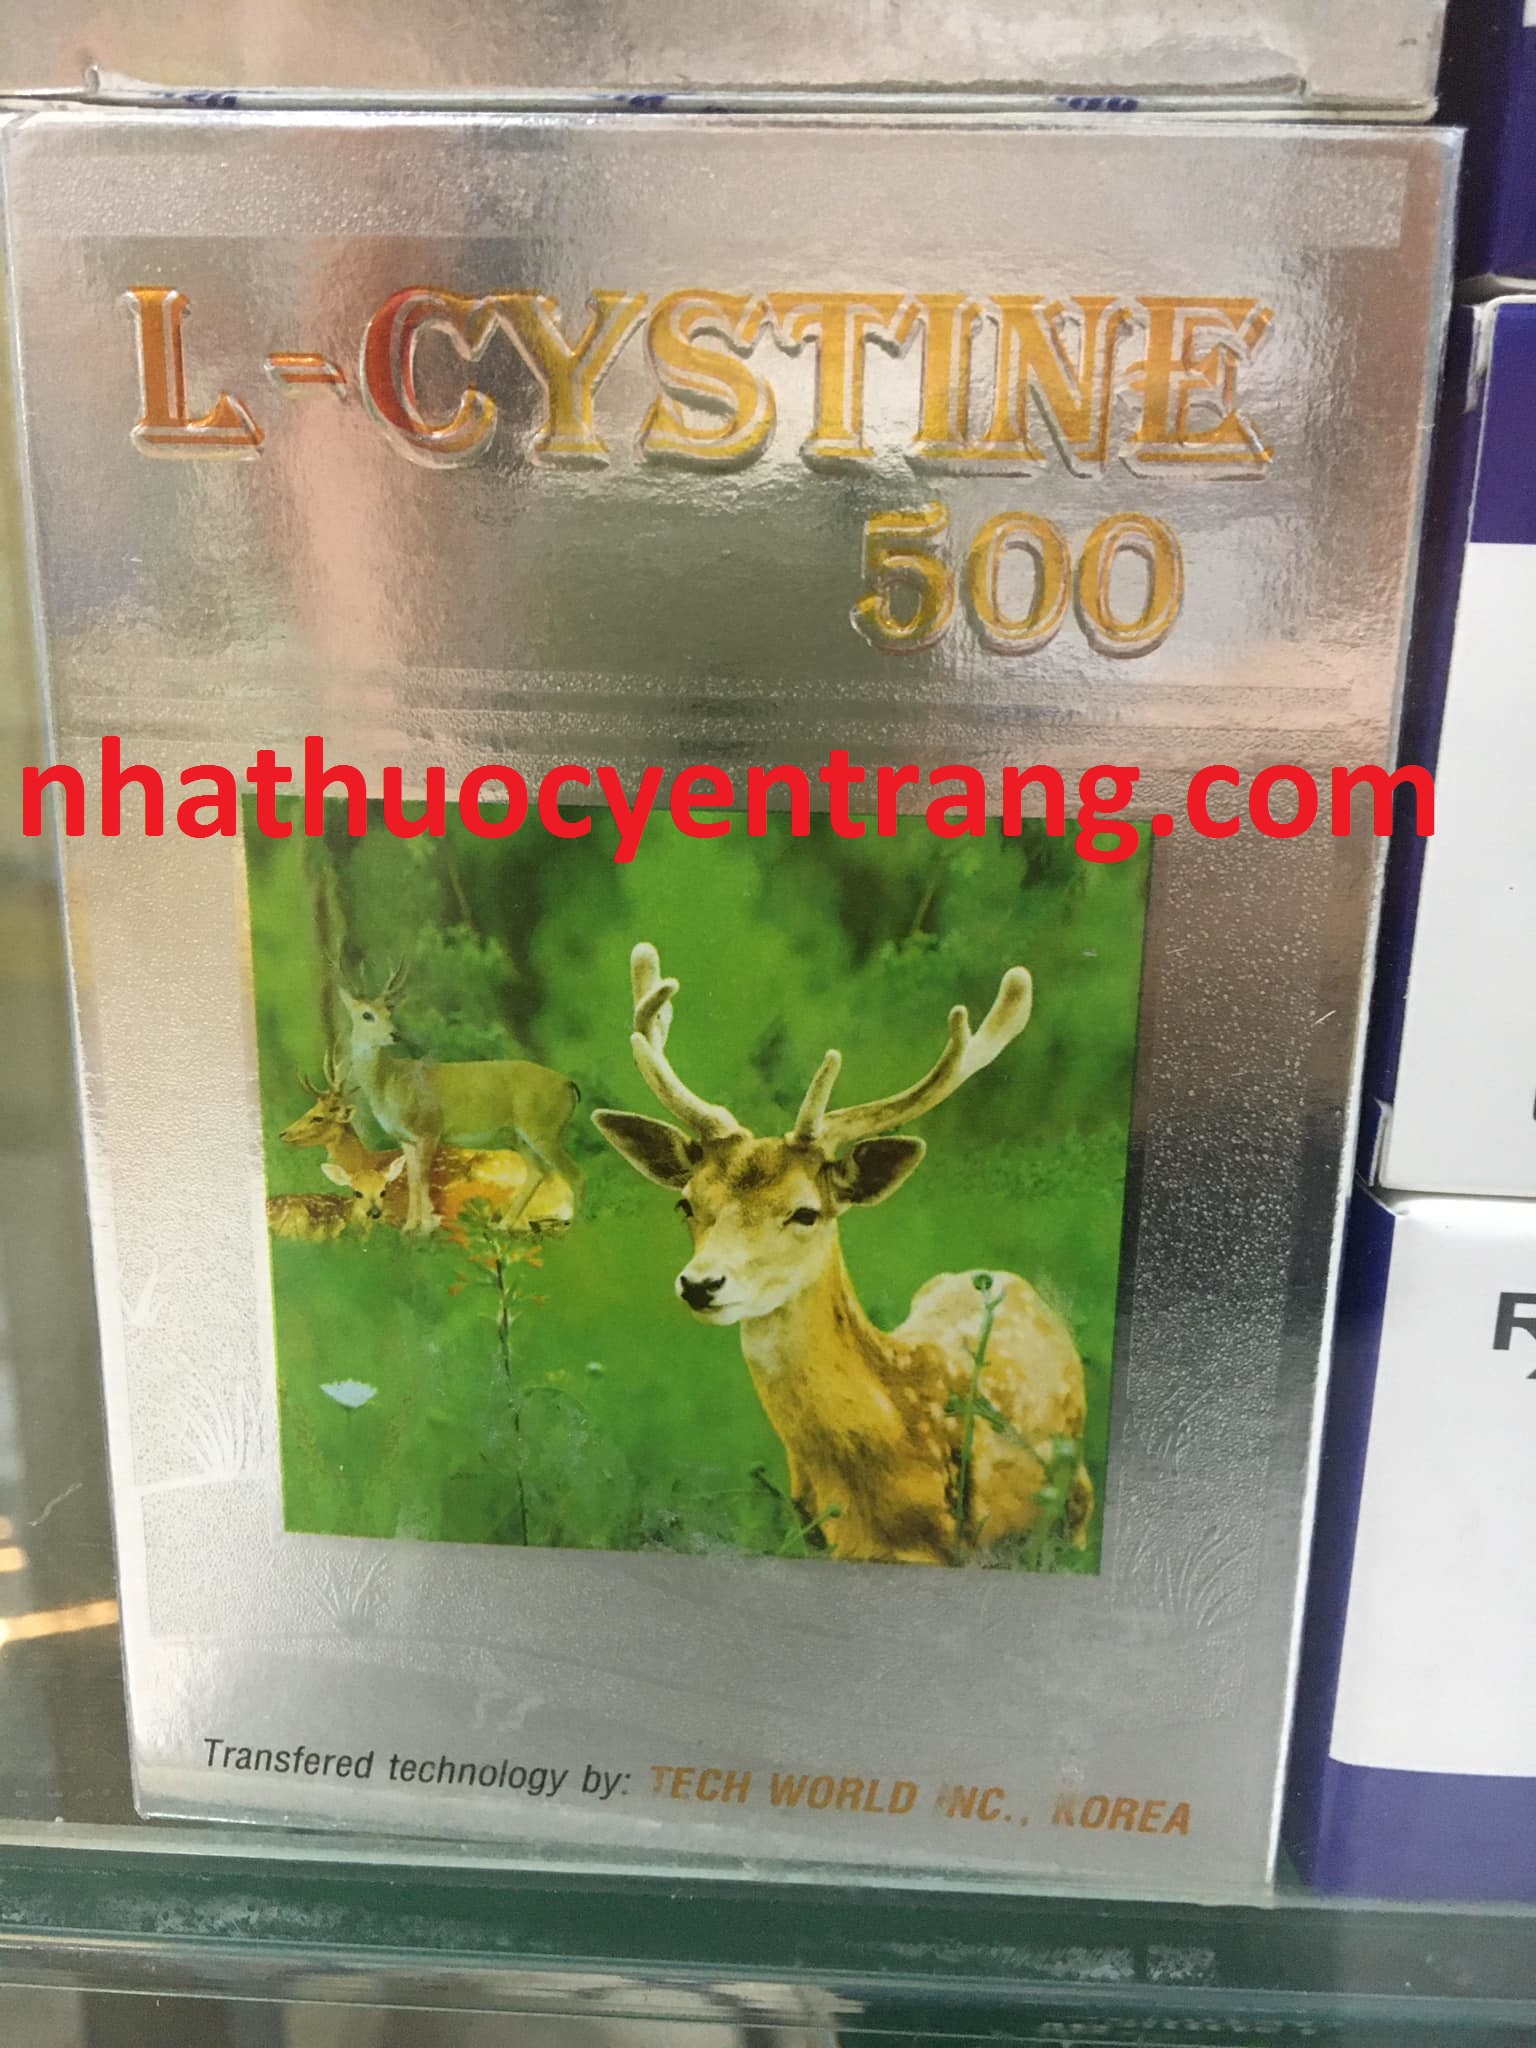 L-Cystine 500